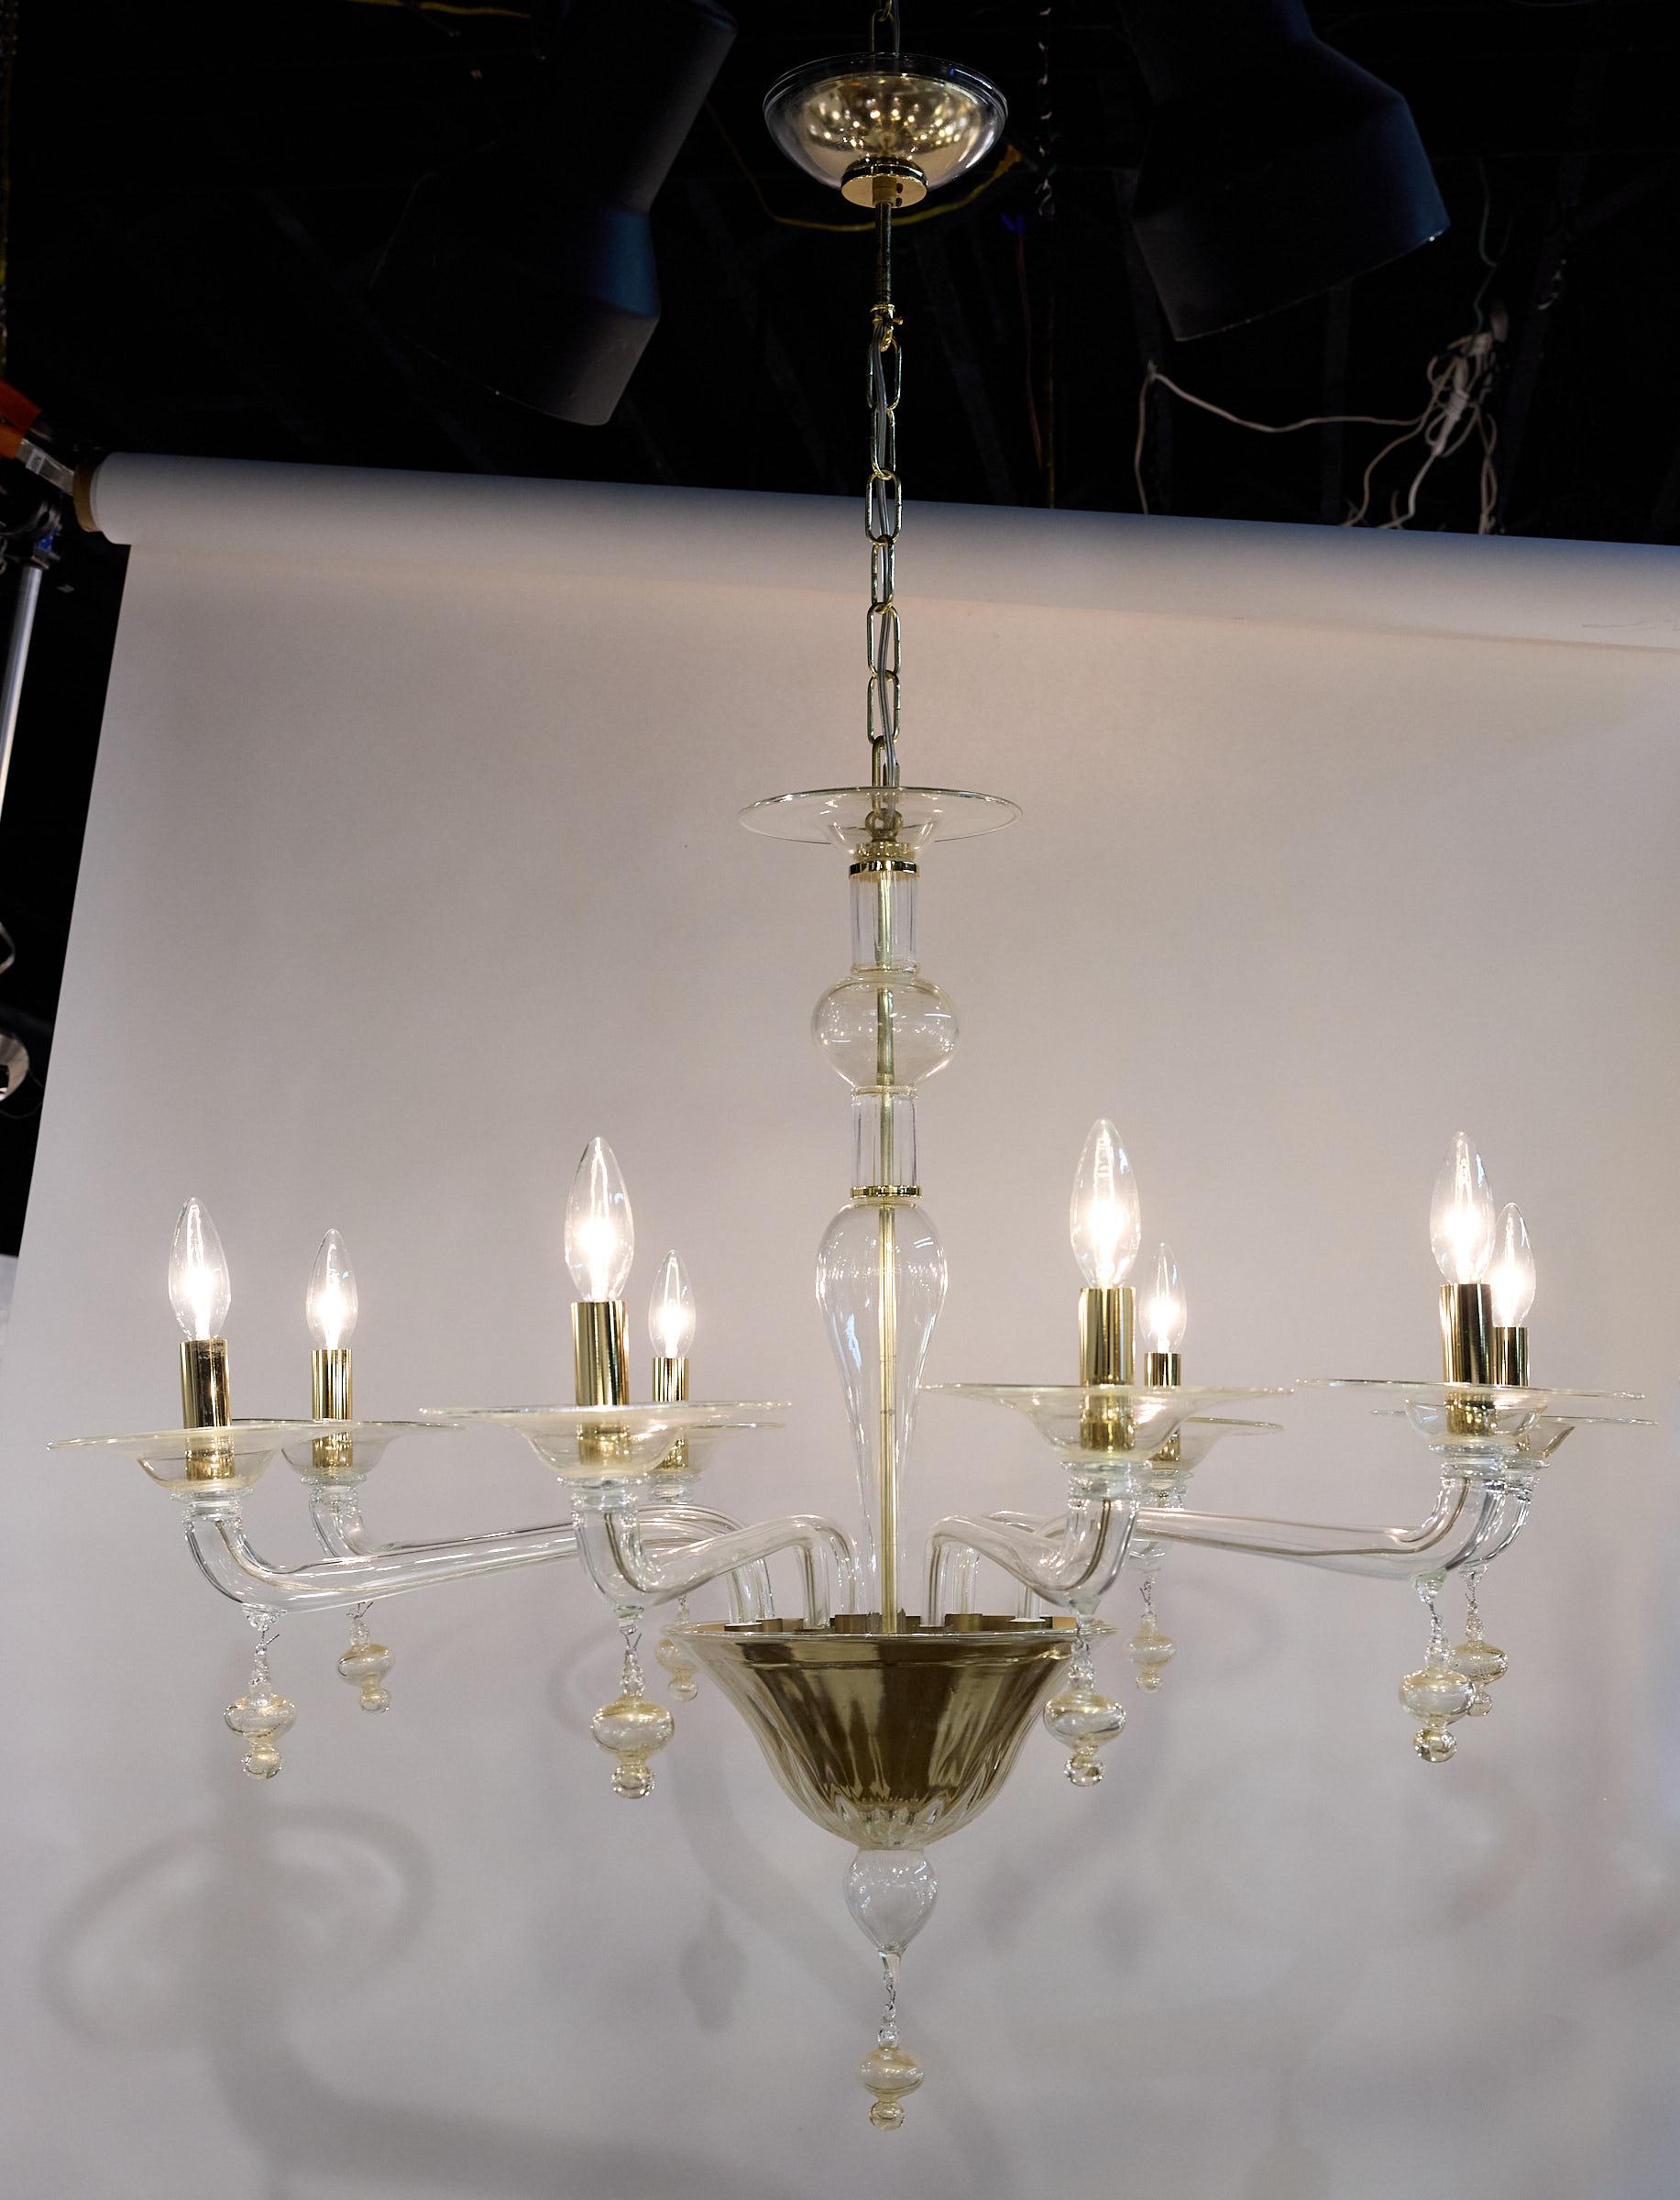 Schlanker und eleganter Kronleuchter aus Murano-Glas des 20. Jahrhunderts mit acht Armen, die Kerzenhalterungen aus Messing tragen. Die Leuchte ist aus klarem Glas, goldfarbenem Glas und Messingakzenten gefertigt. 

Ein passender Baldachin und eine